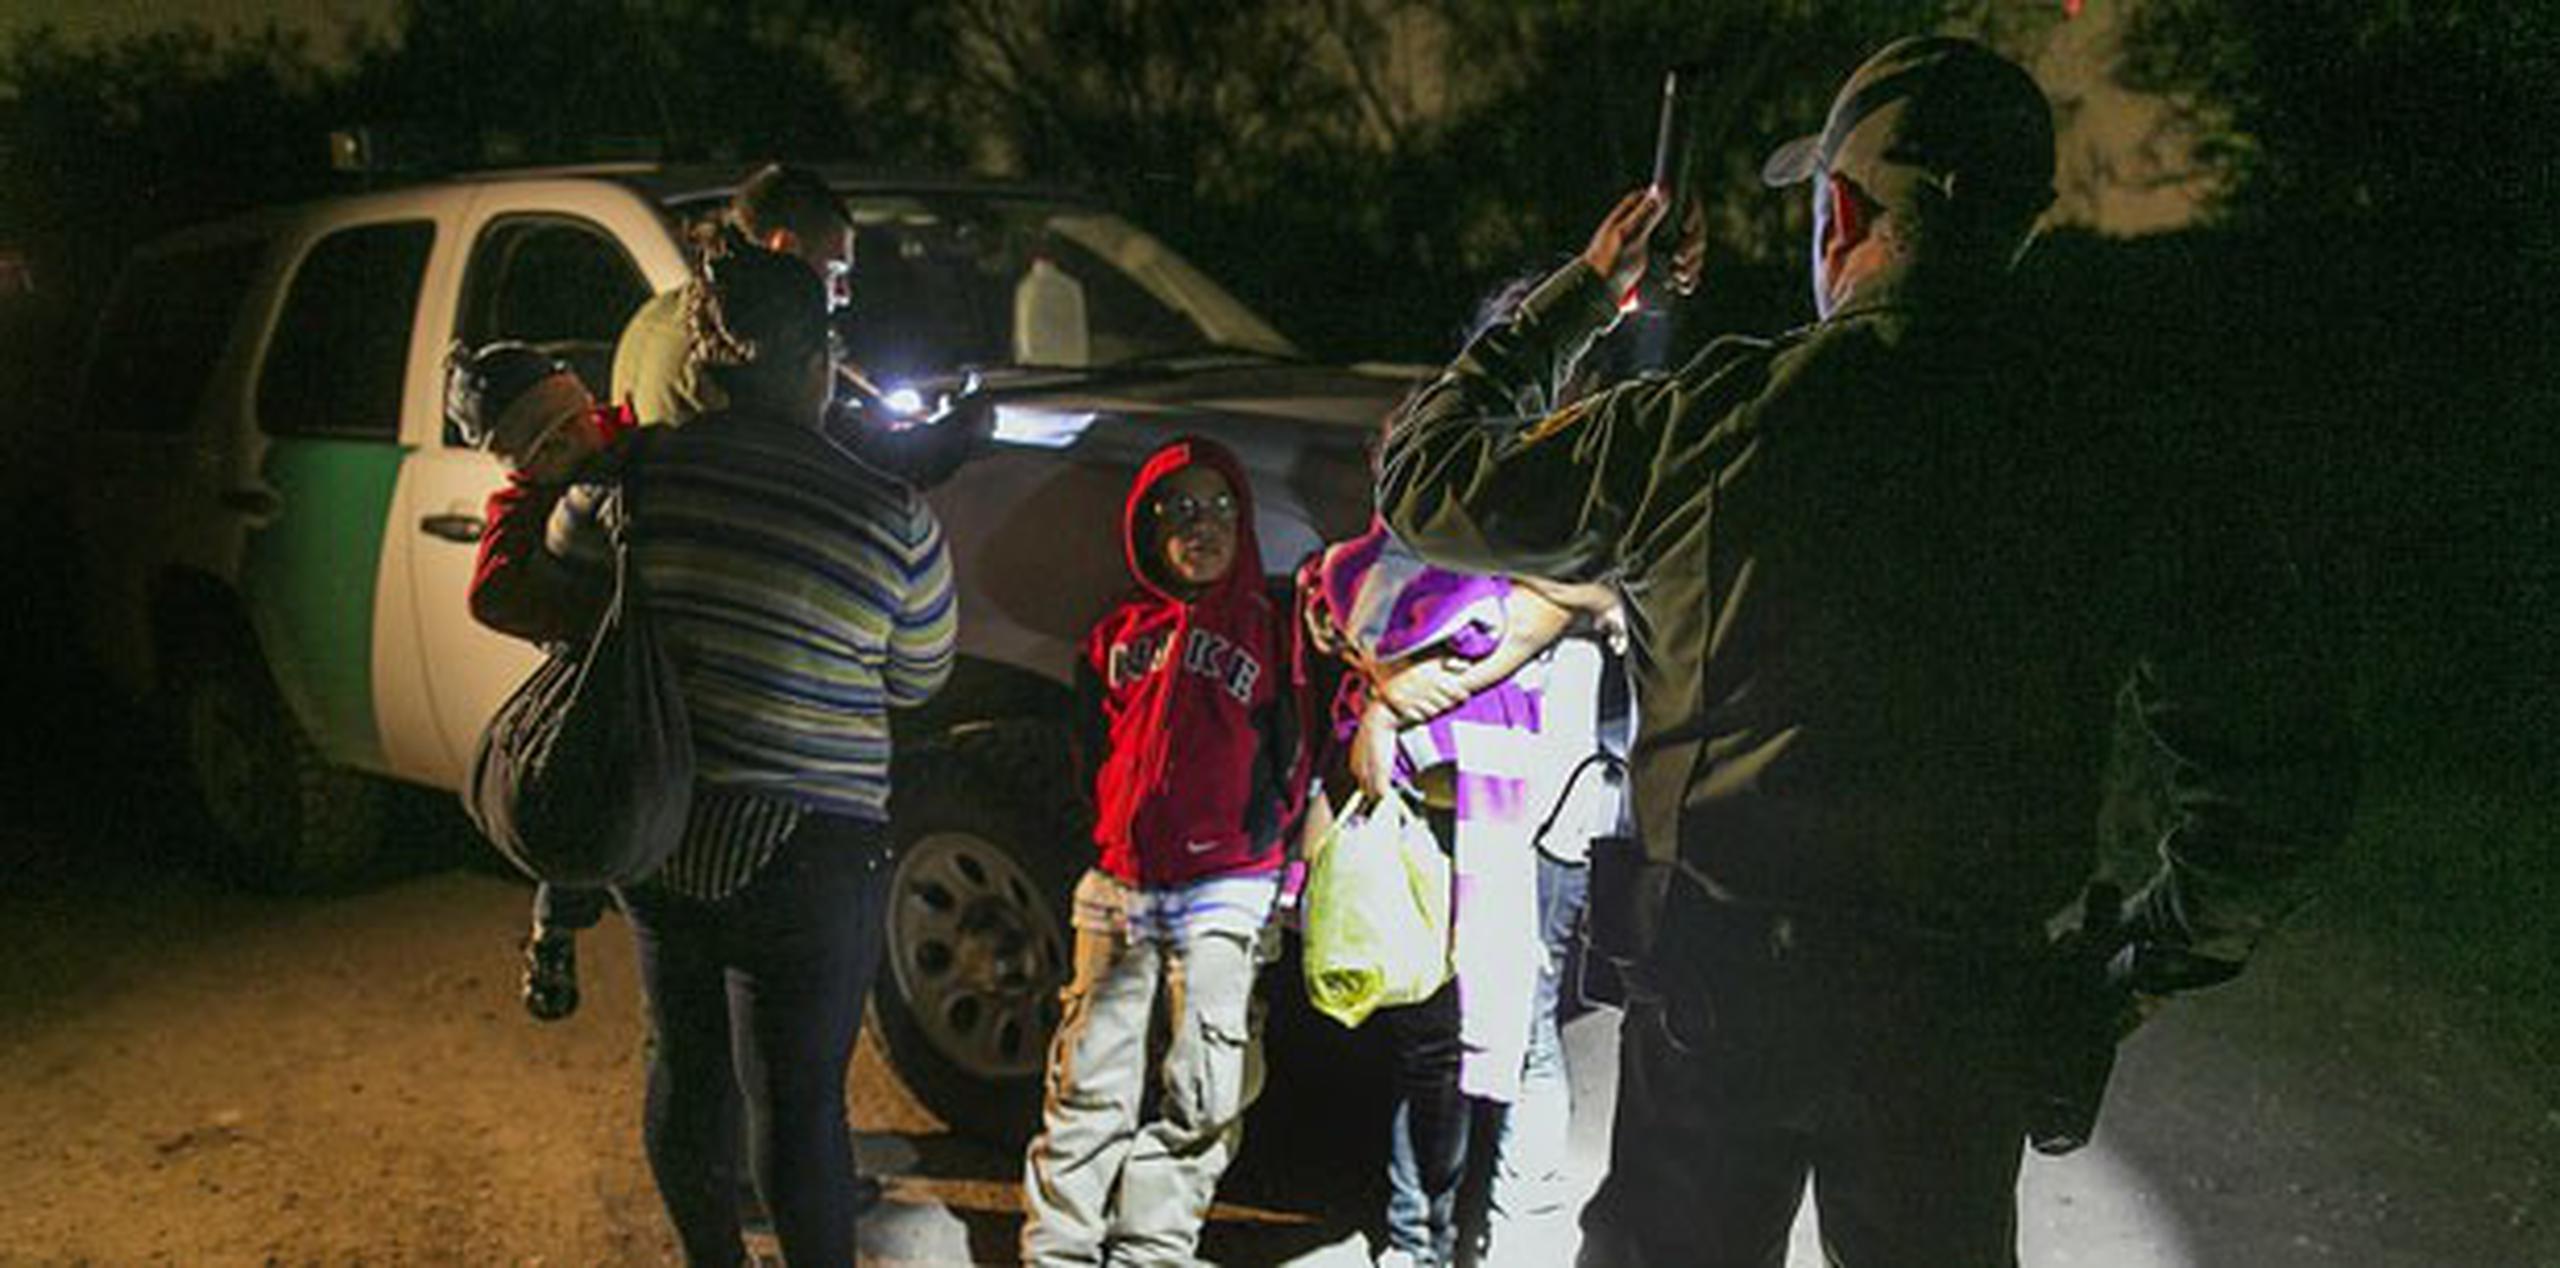 De los 57,000 menores sin acompañantes adultos que han llegado a la frontera desde octubre, solo 1,254 habían sido deportados a fines de junio. (AP Photo/Austin American-Statesman, Rodolfo Gonzalez)